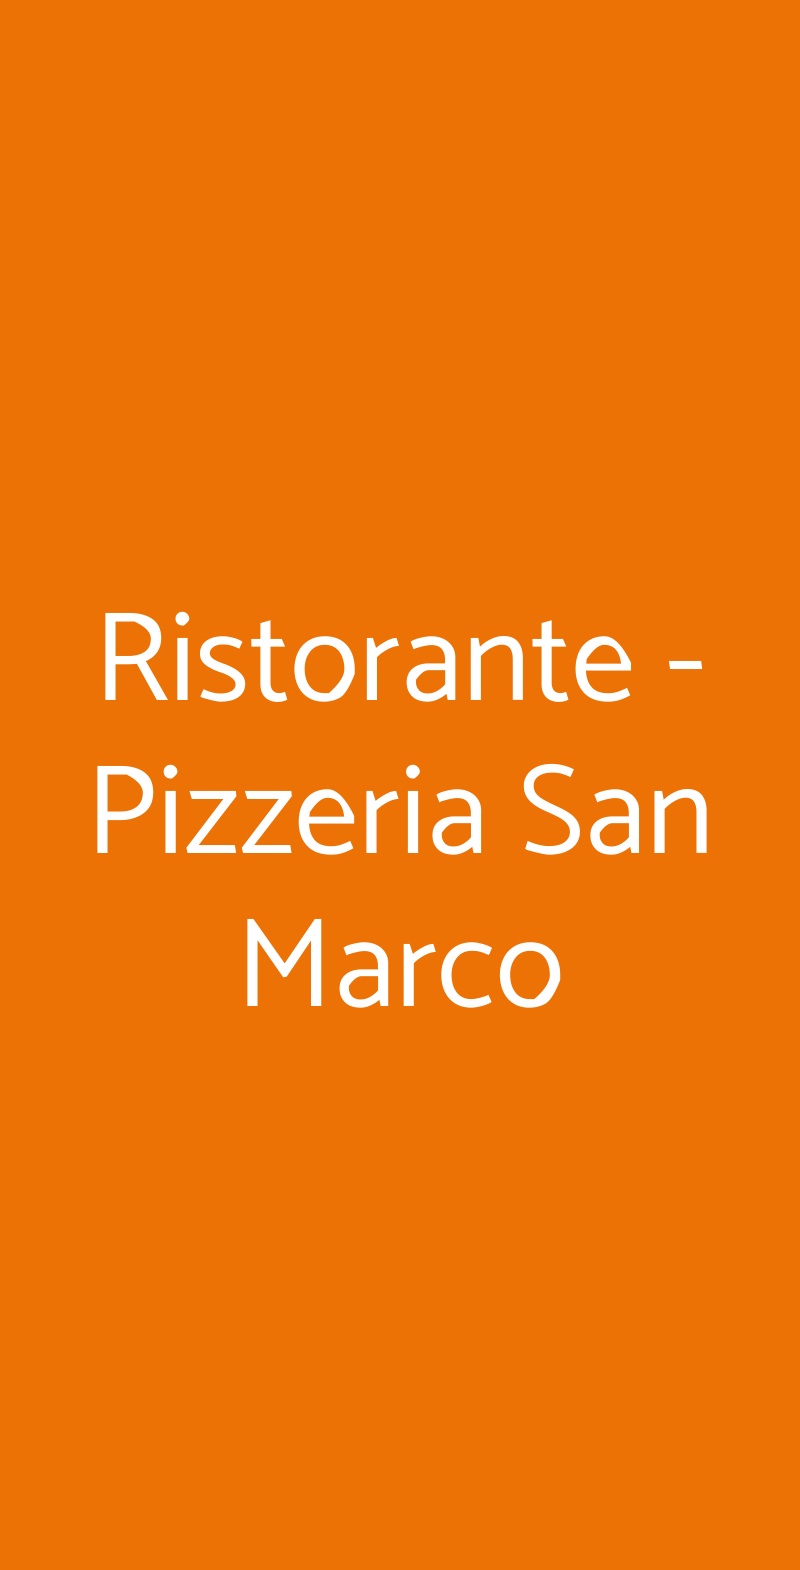 Ristorante - Pizzeria San Marco Milano menù 1 pagina